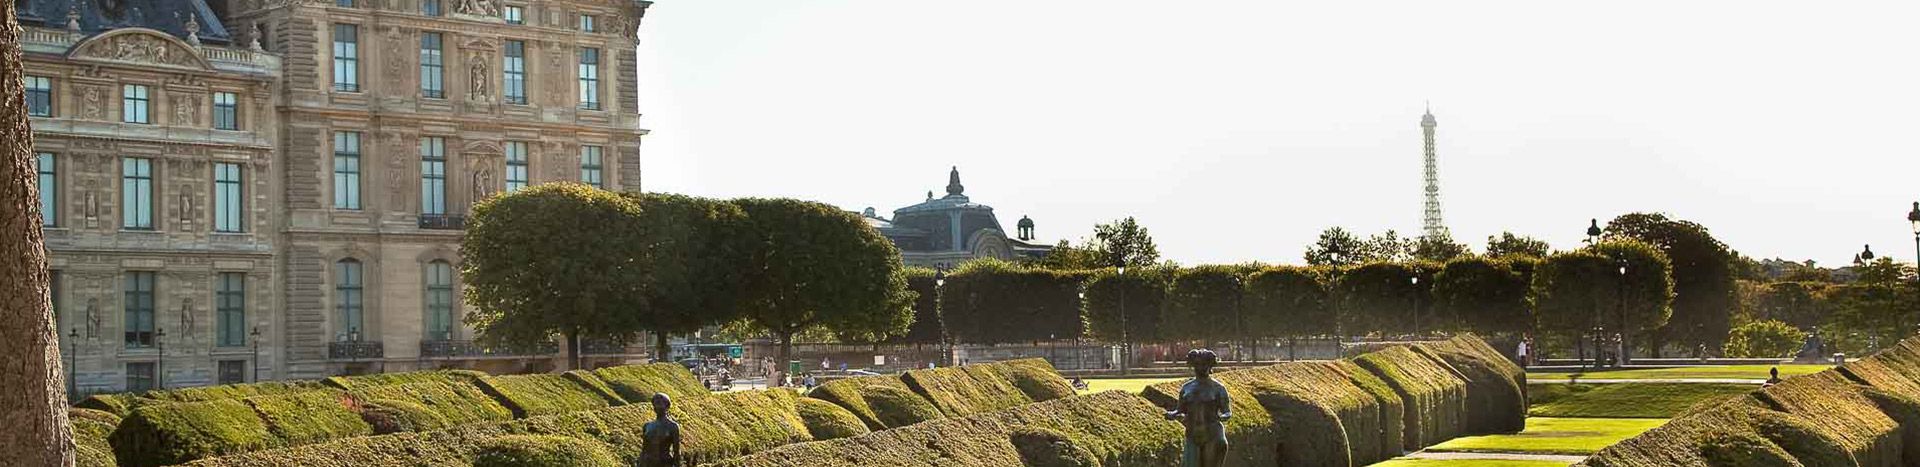 Tuileries gardens in Paris